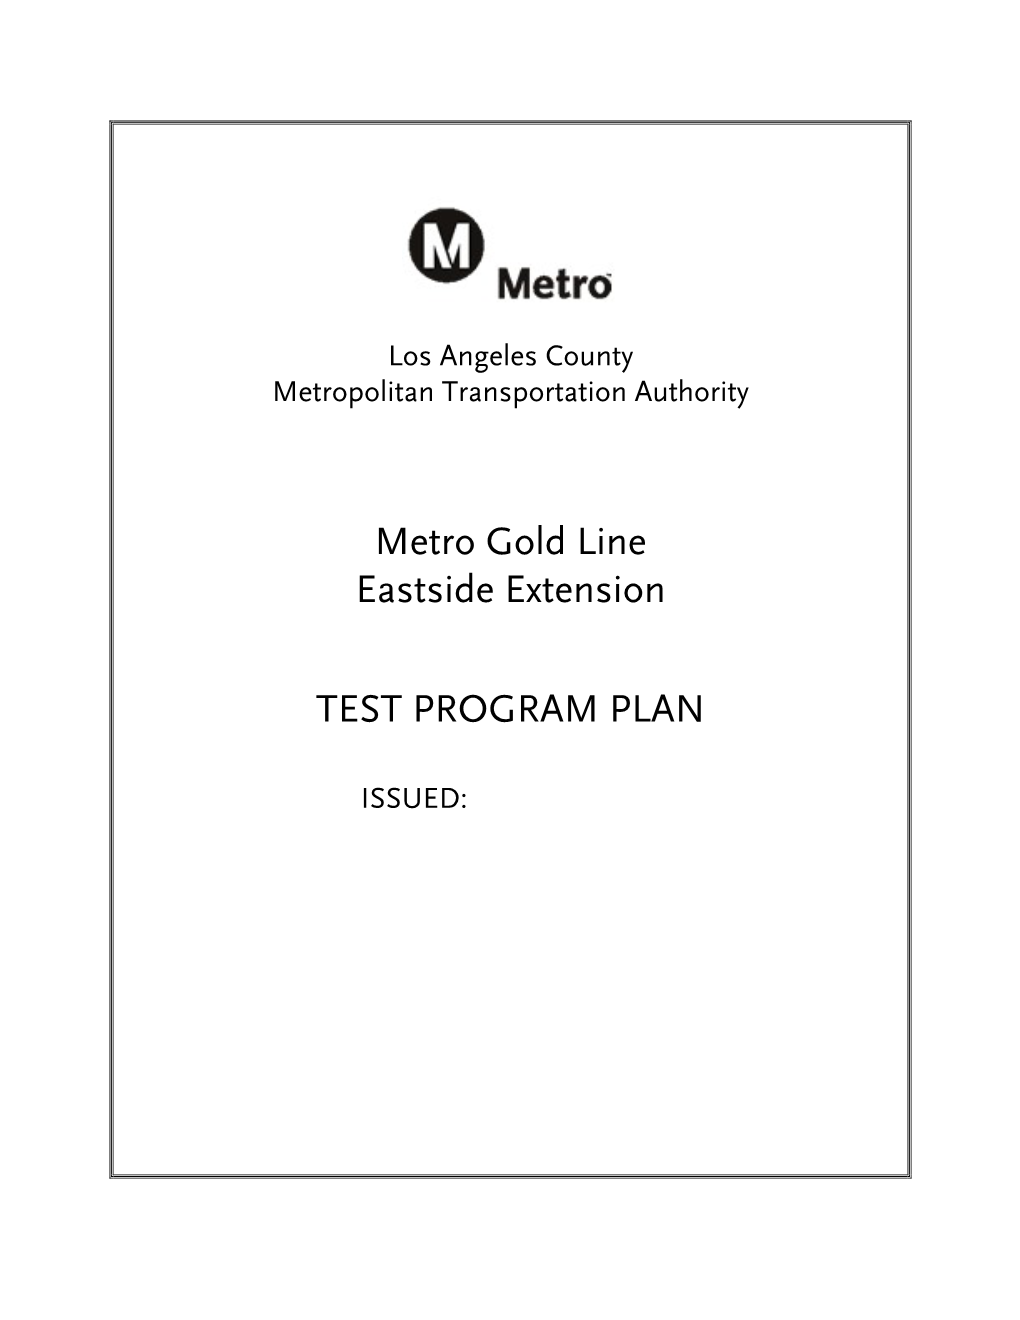 Metro Gold Line Eastside Extension TEST PROGRAM PLAN